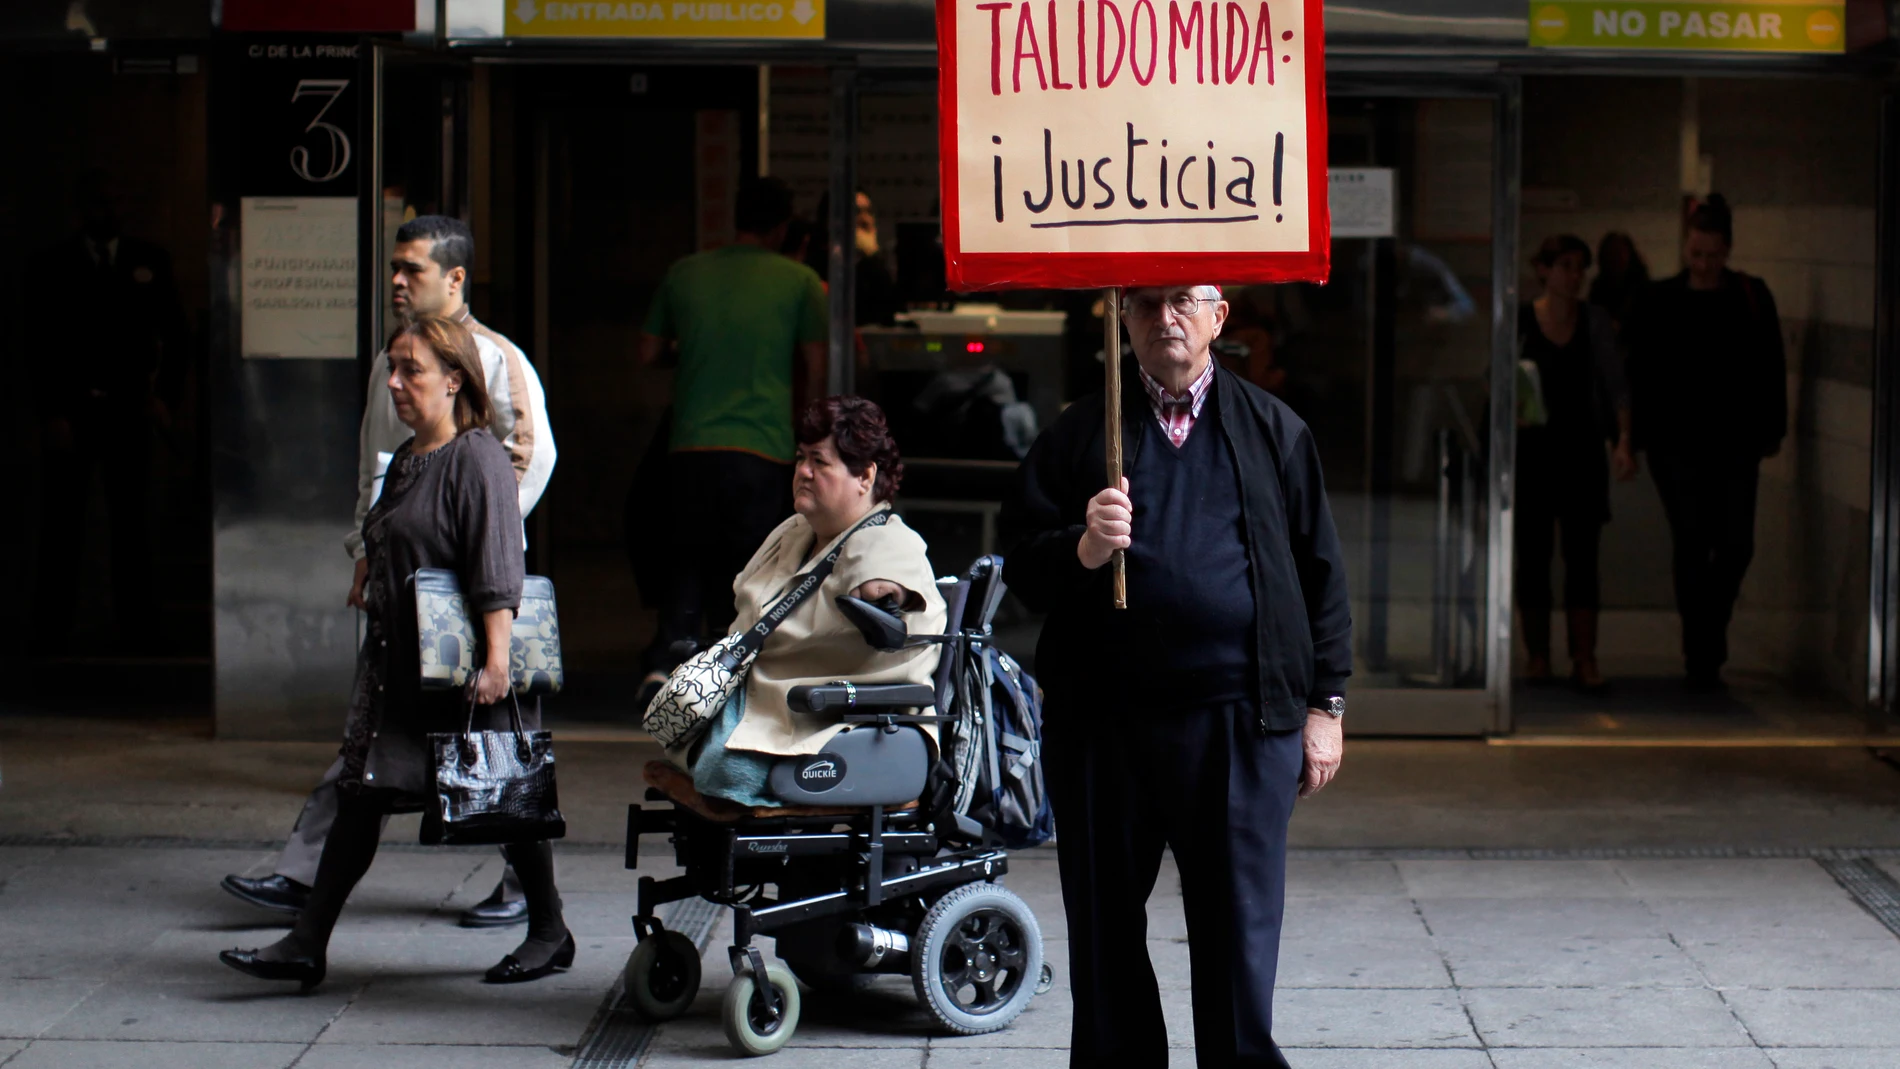 Una víctima de la talidomida muestra un cartel reclamando justicia